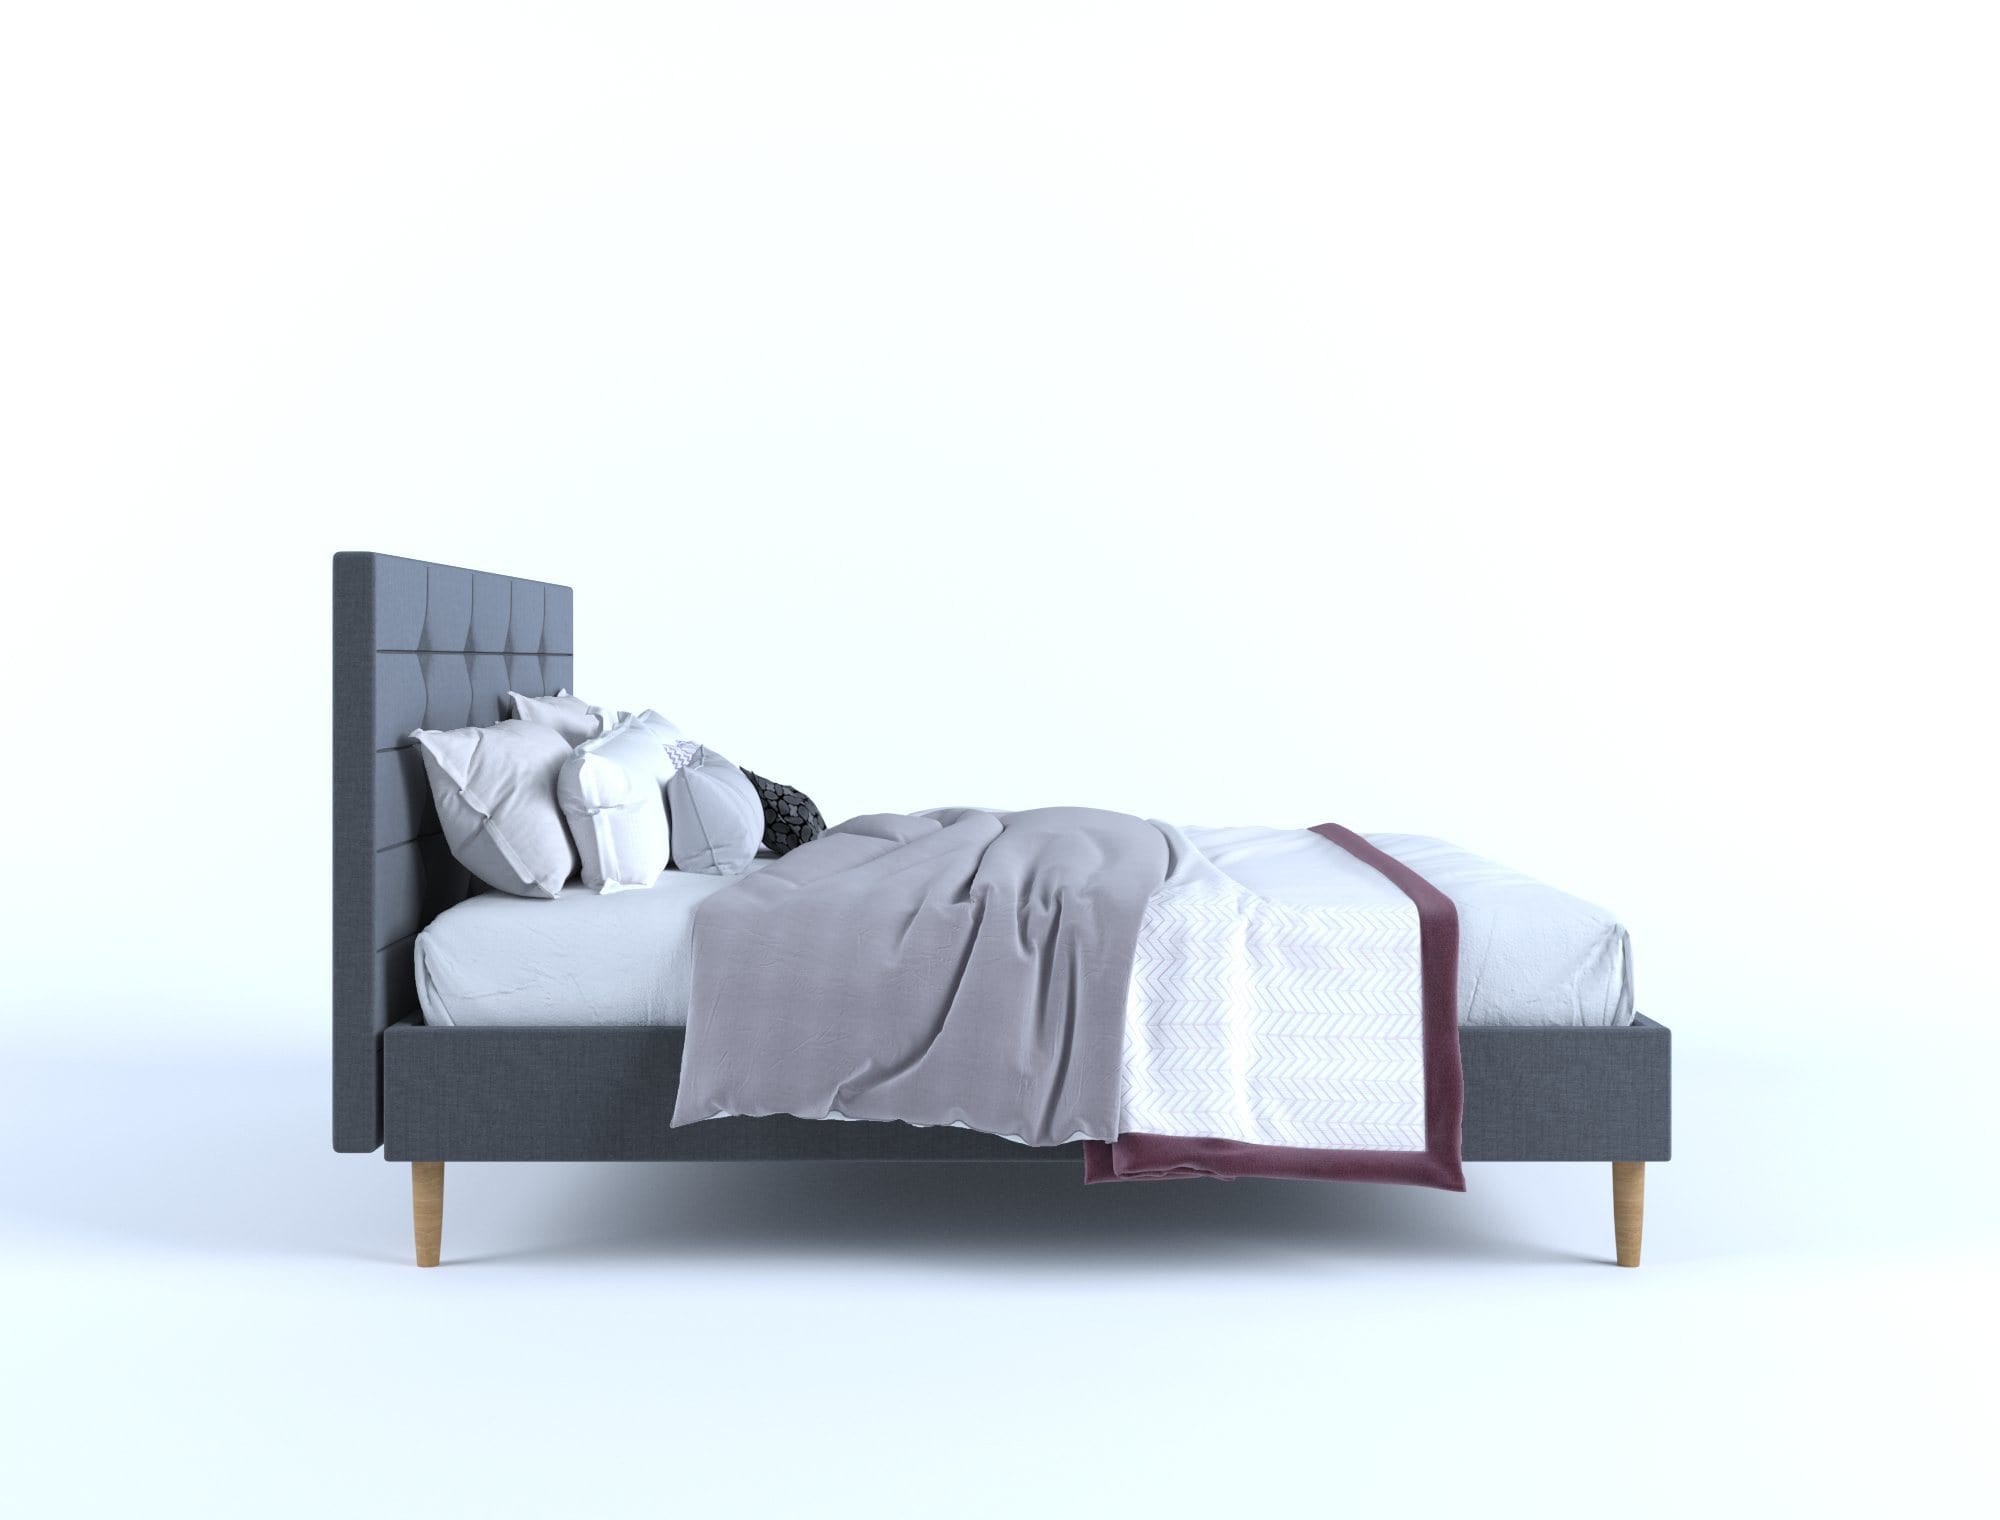 Stelz Fabric Frame - Charcoal Queen - Newstart Furniture